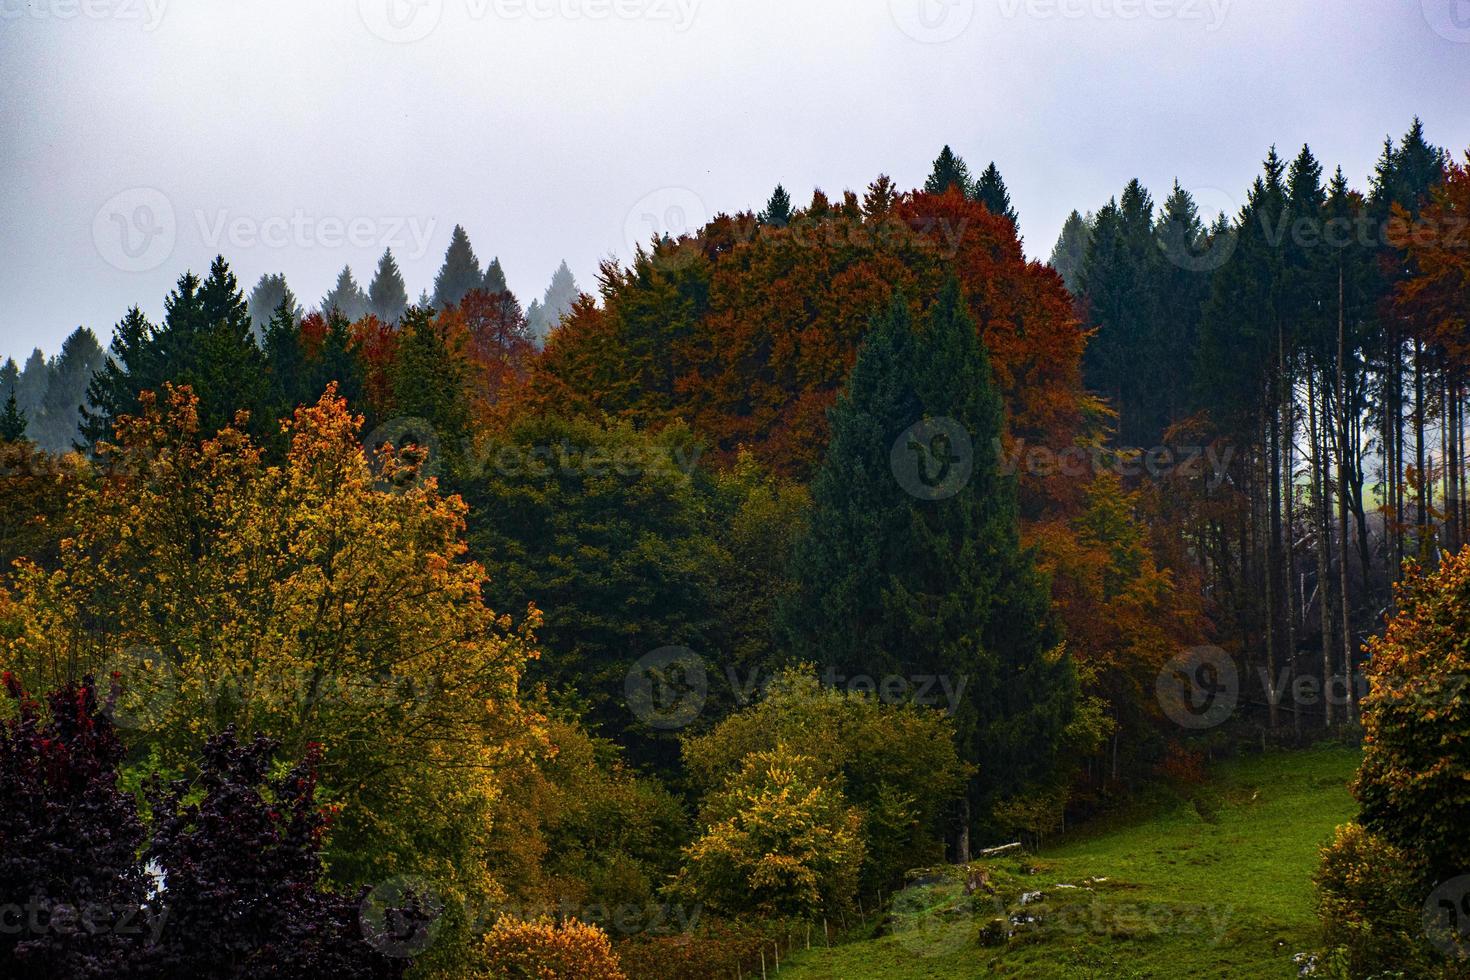 bosque de arboles de otoño foto